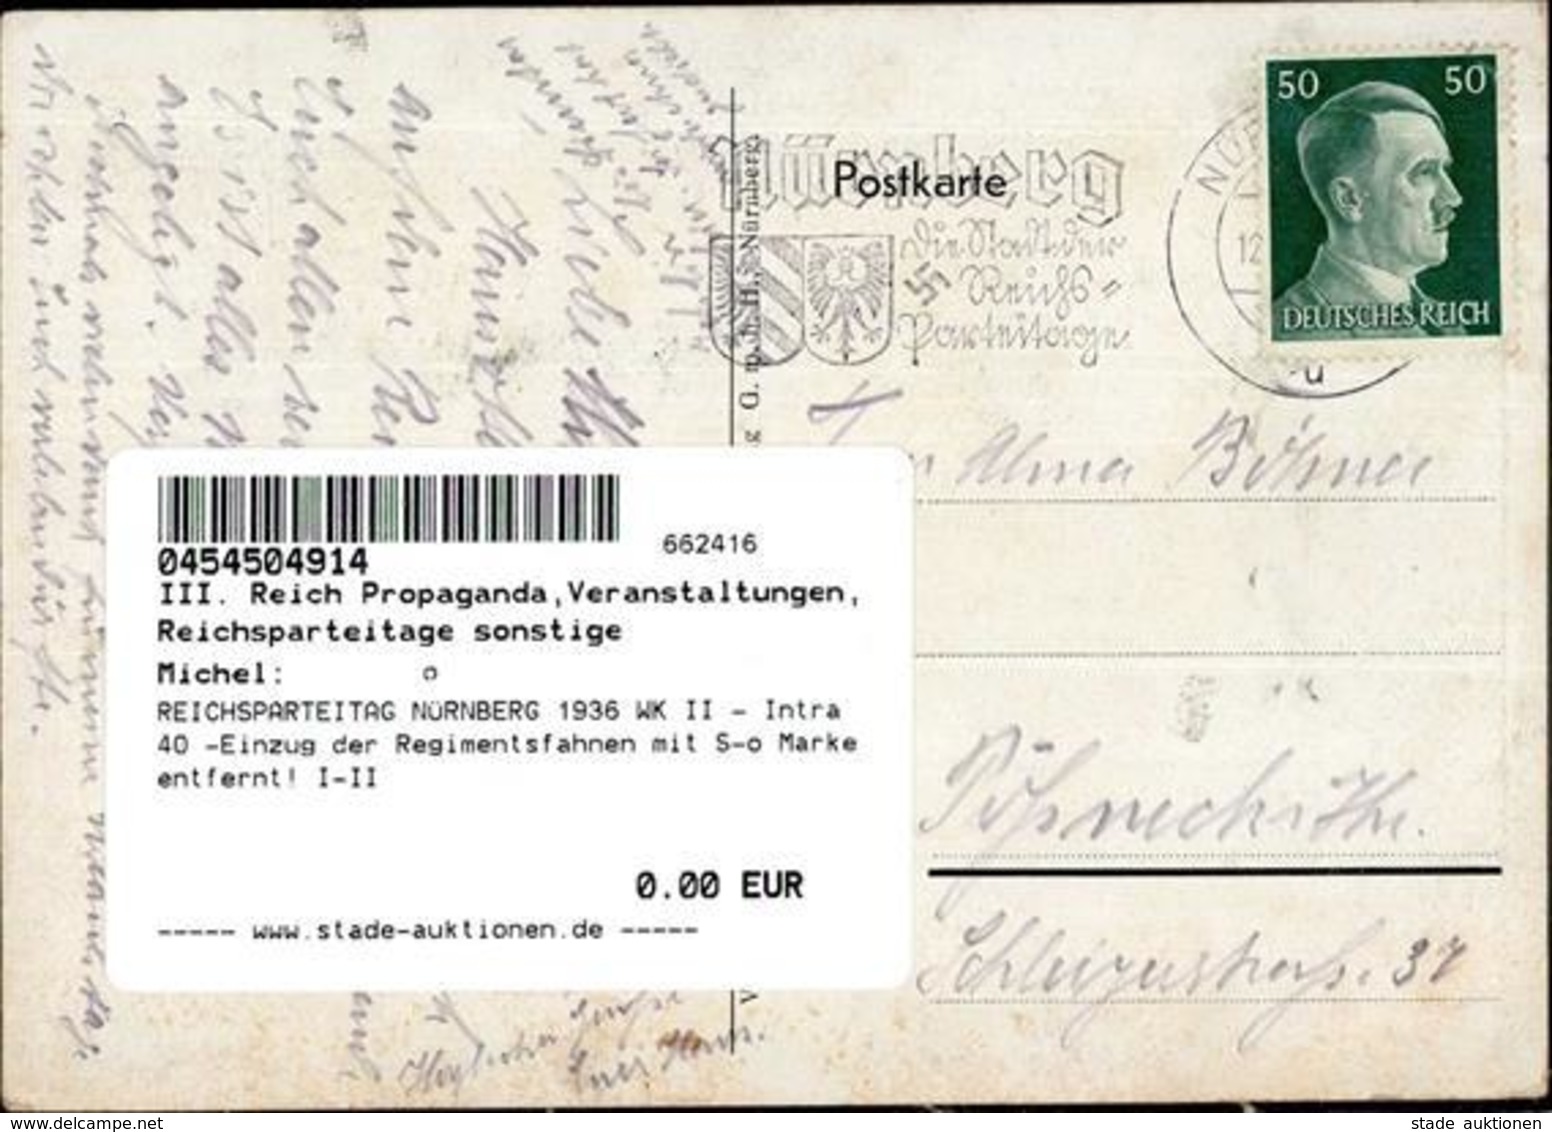 REICHSPARTEITAG NÜRNBERG 1936 WK II - Intra 40 -Einzug Der Regimentsfahnen Mit S-o Marke Entfernt! I-II - Weltkrieg 1939-45